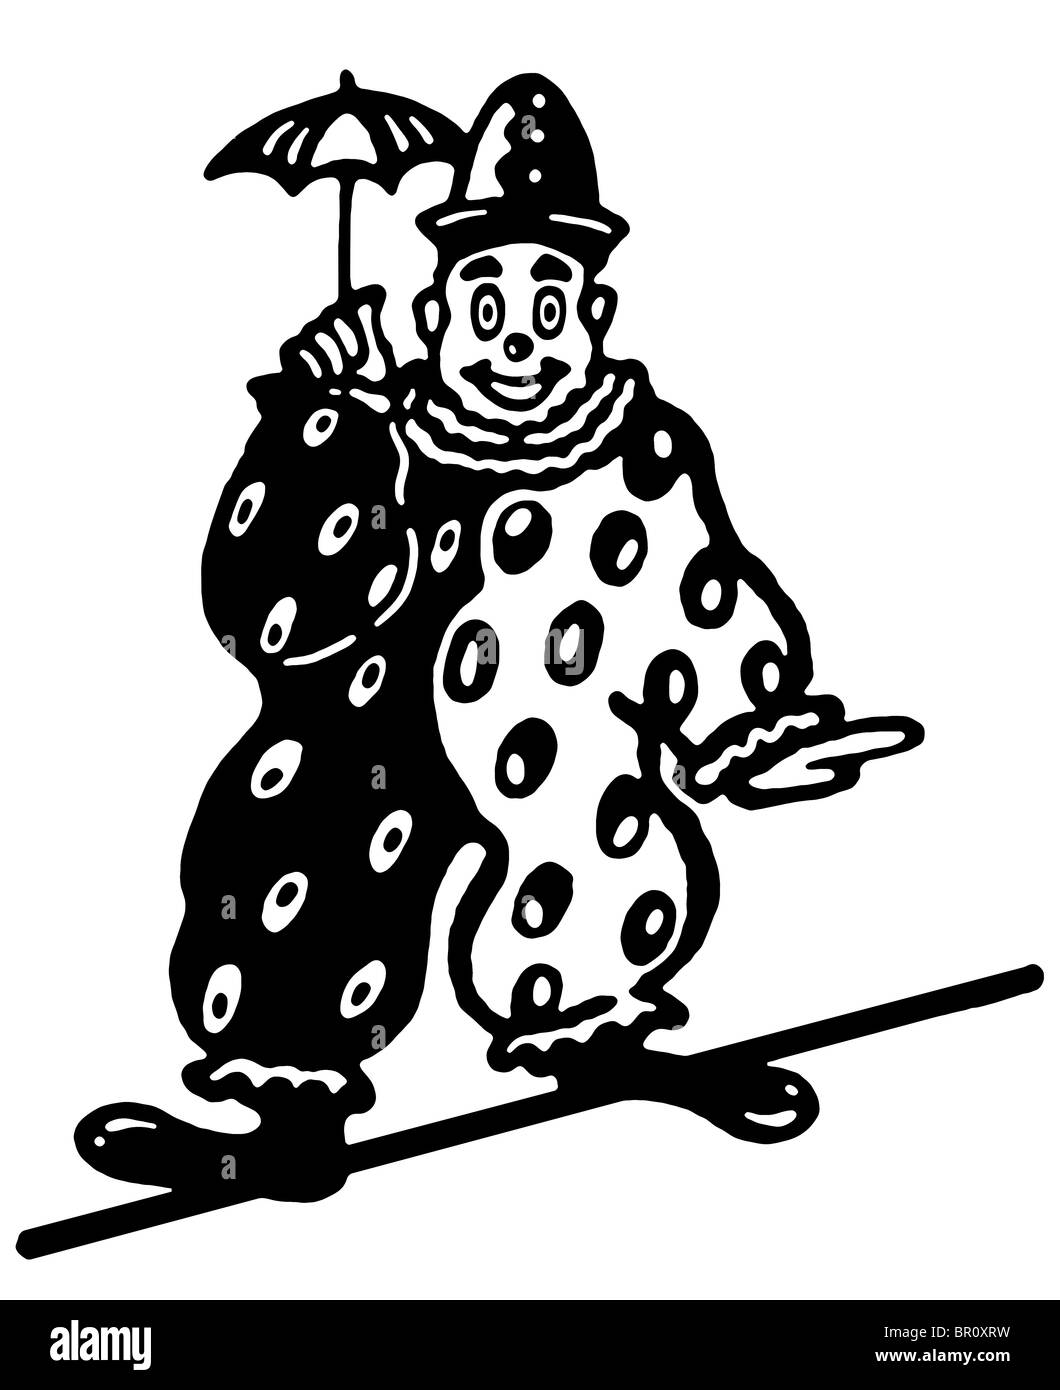 Une version noir et blanc d'une illustration d'un clown sur une corde raide Banque D'Images